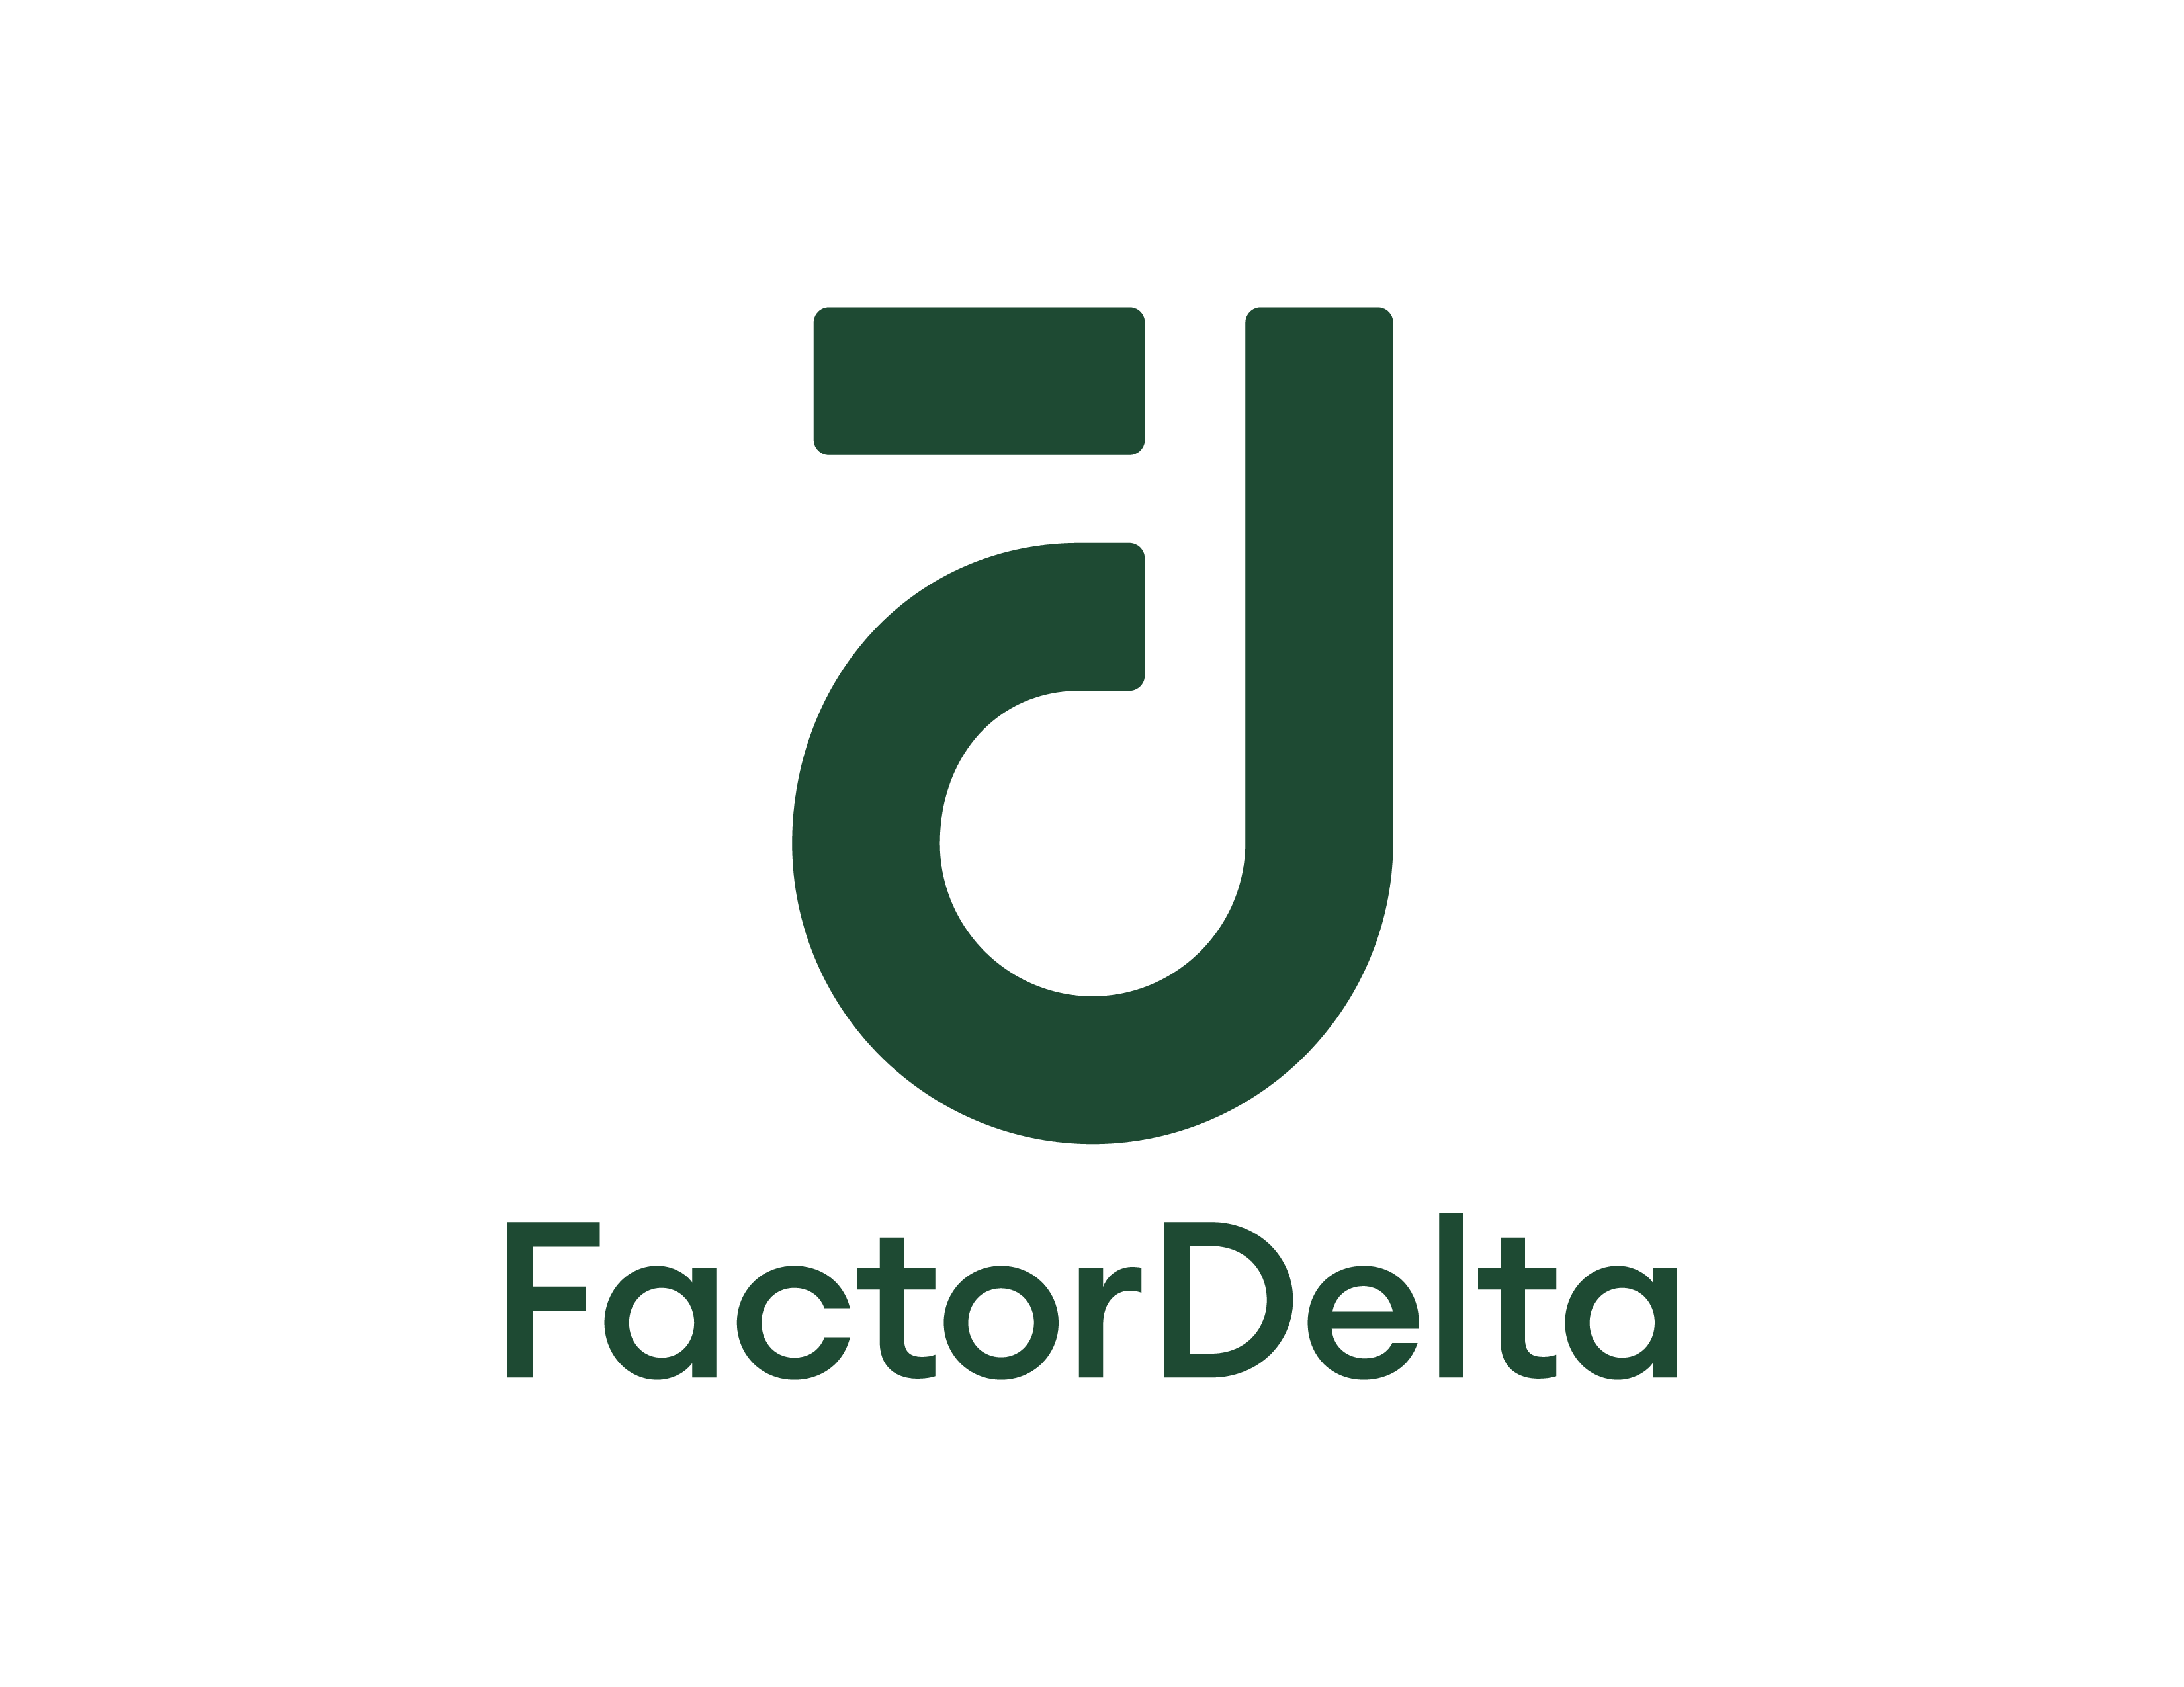 Factor Delta